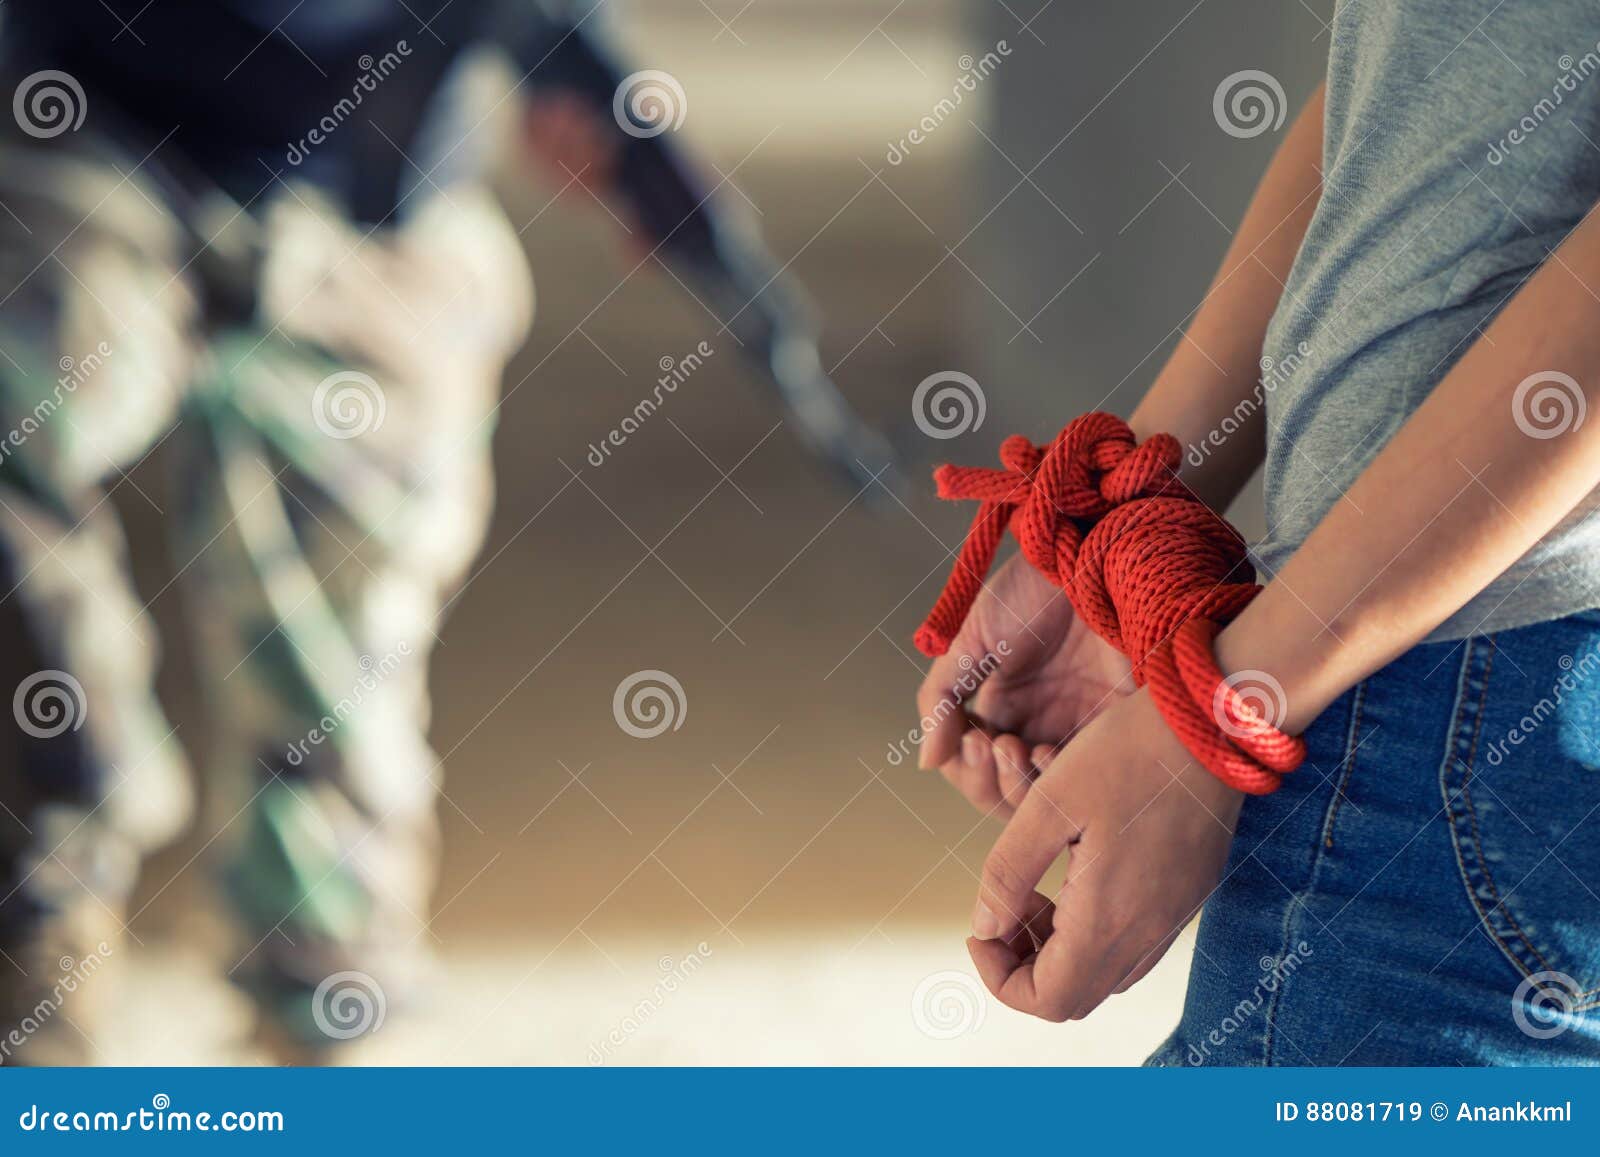 Связать руки мужику. Связанные руки веревкой. Борьба со Связыванием. Связанные руки девушки.